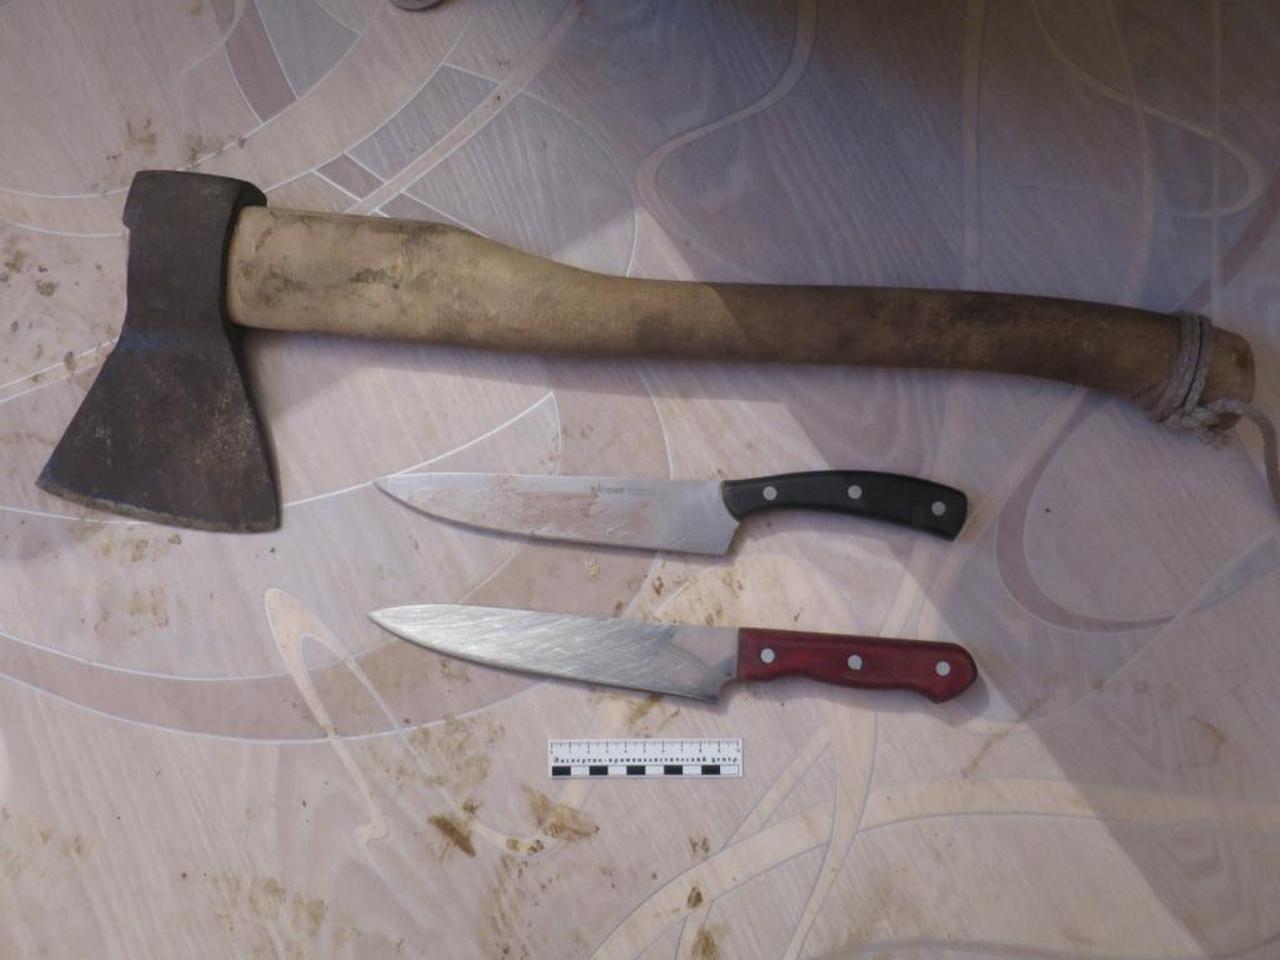 Топор и ножи, которыми орудовал убийца